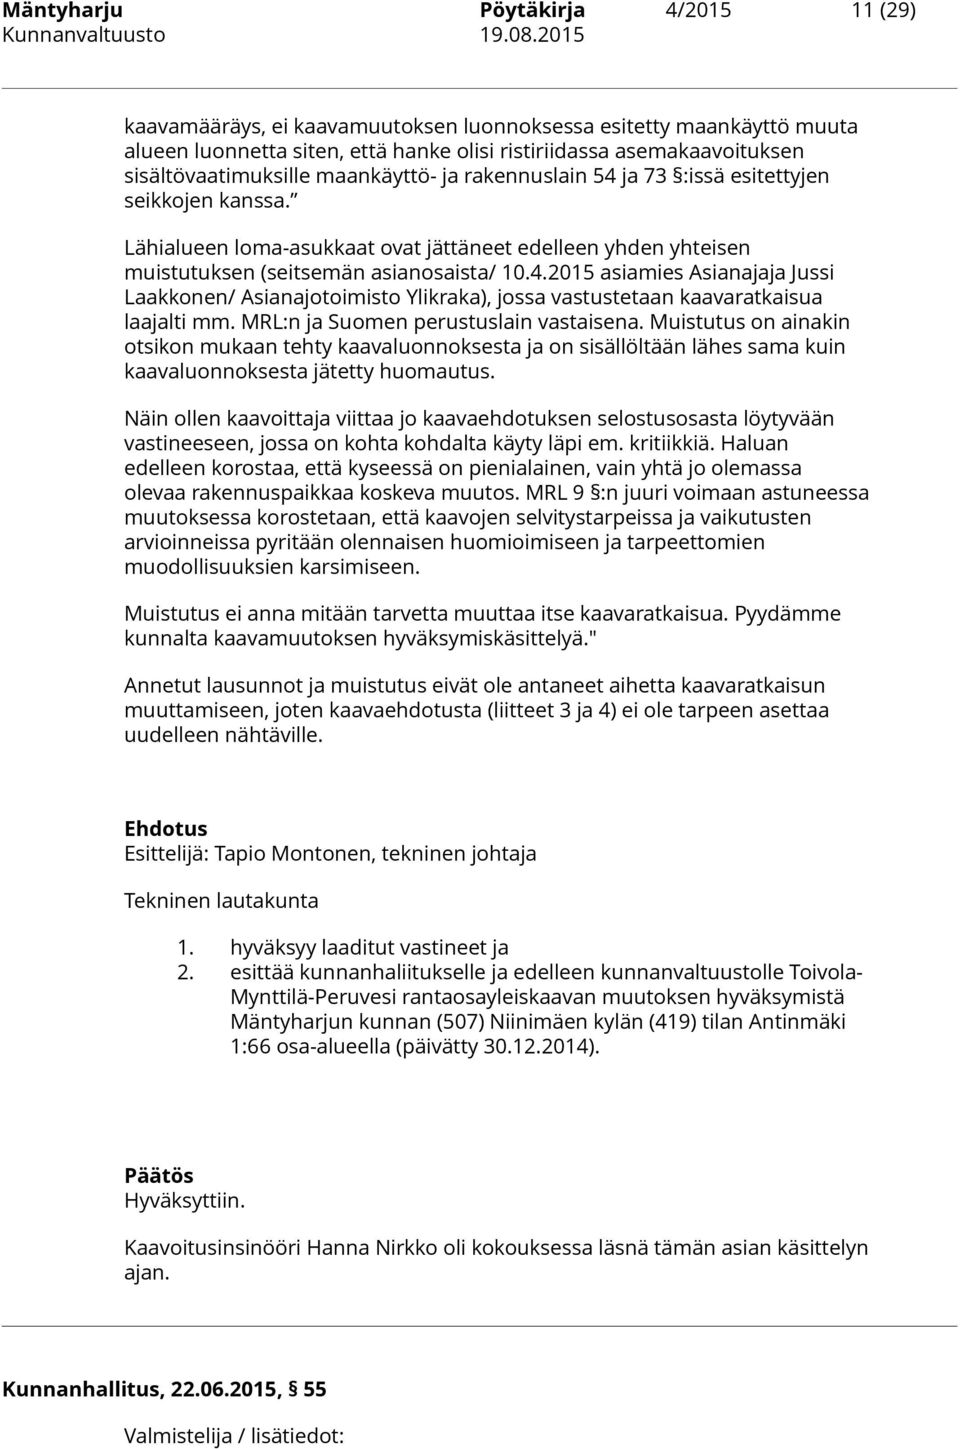 4.2015 asiamies Asianajaja Jussi Laakkonen/ Asianajotoimisto Ylikraka), jossa vastustetaan kaavaratkaisua laajalti mm. MRL:n ja Suomen perustuslain vastaisena.